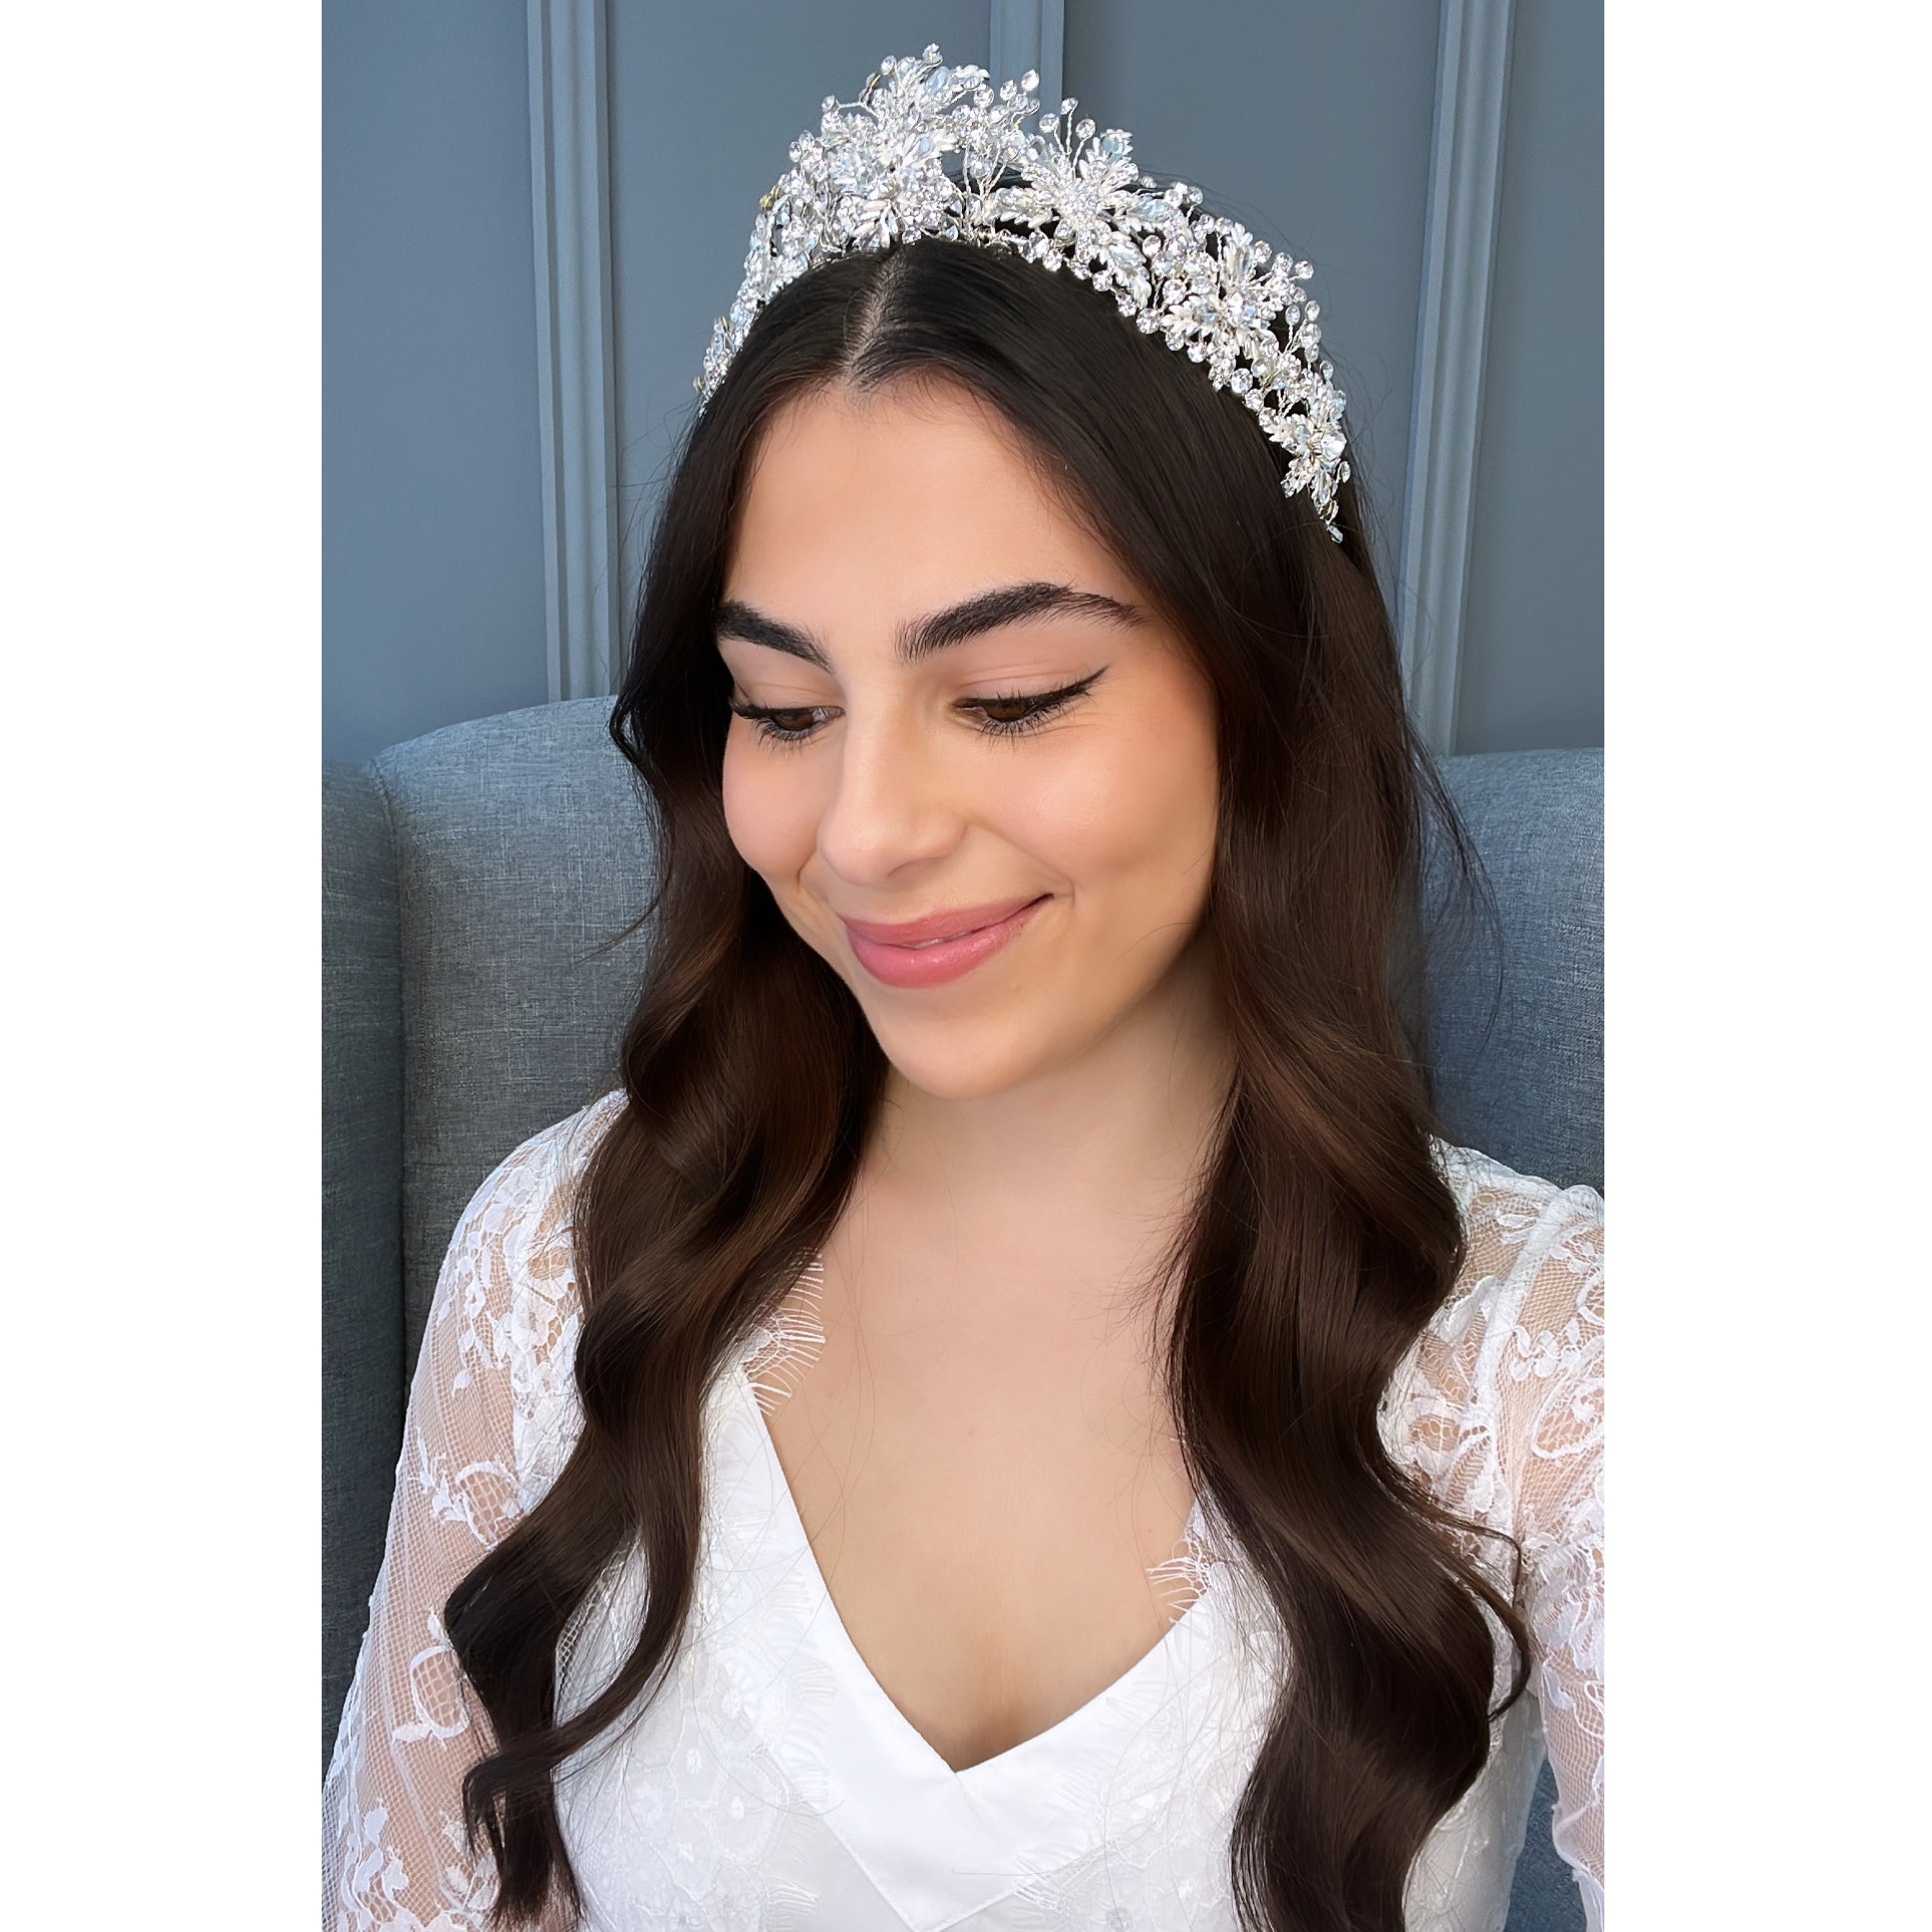 Zainab Bridal Crown Hair Accessories - Tiara & Crown    